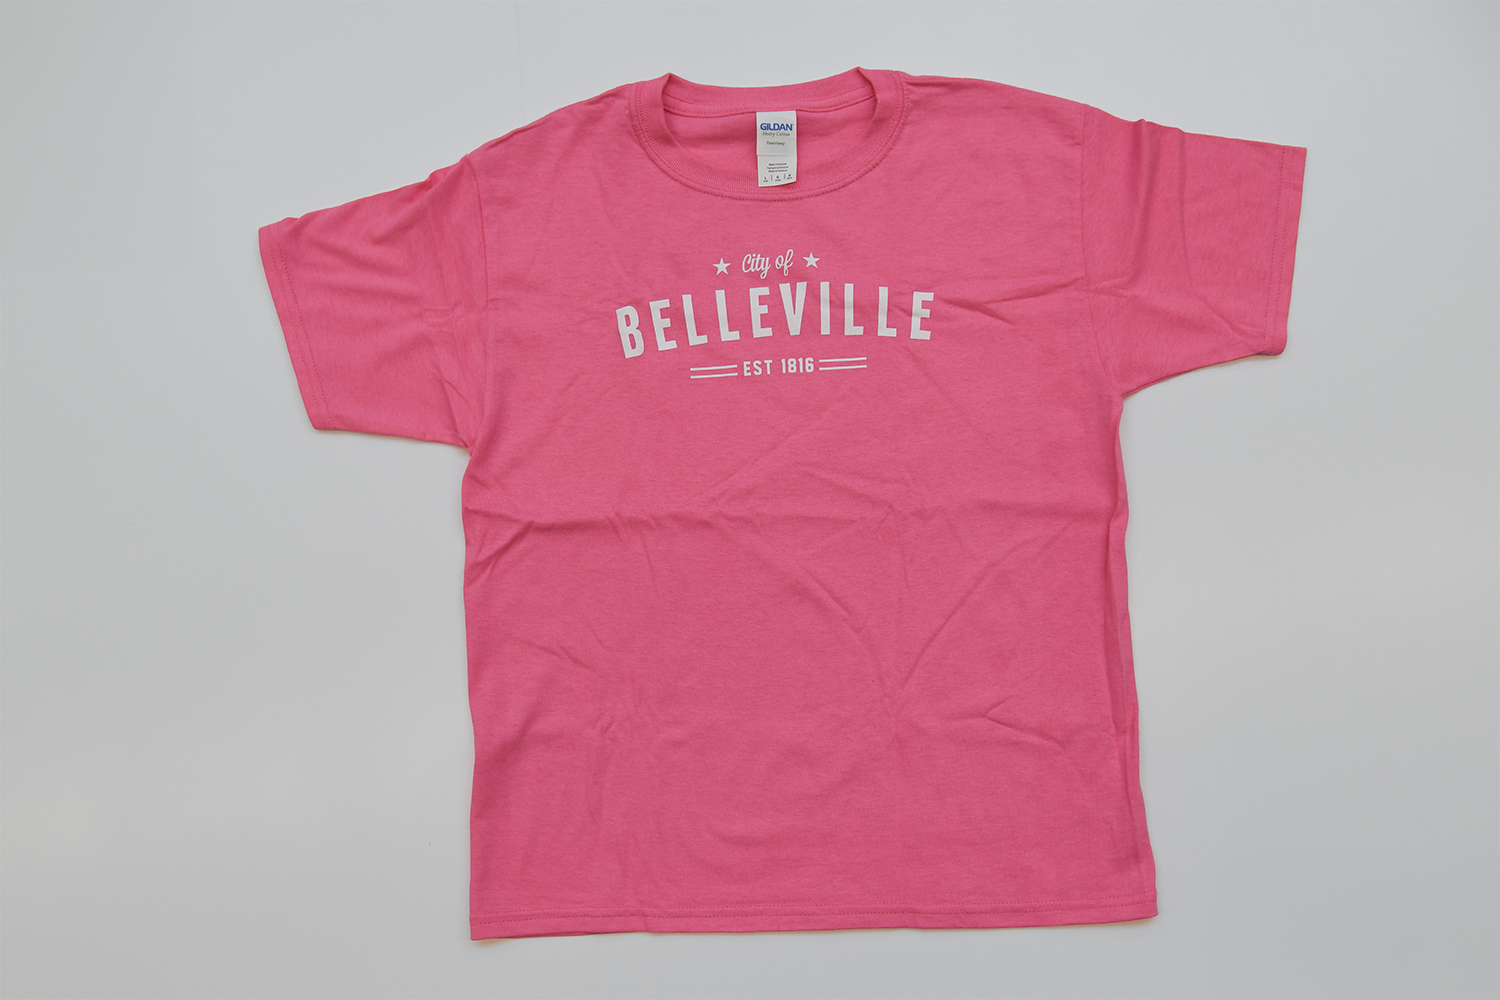 Kids' City of Belleville t-shirt.